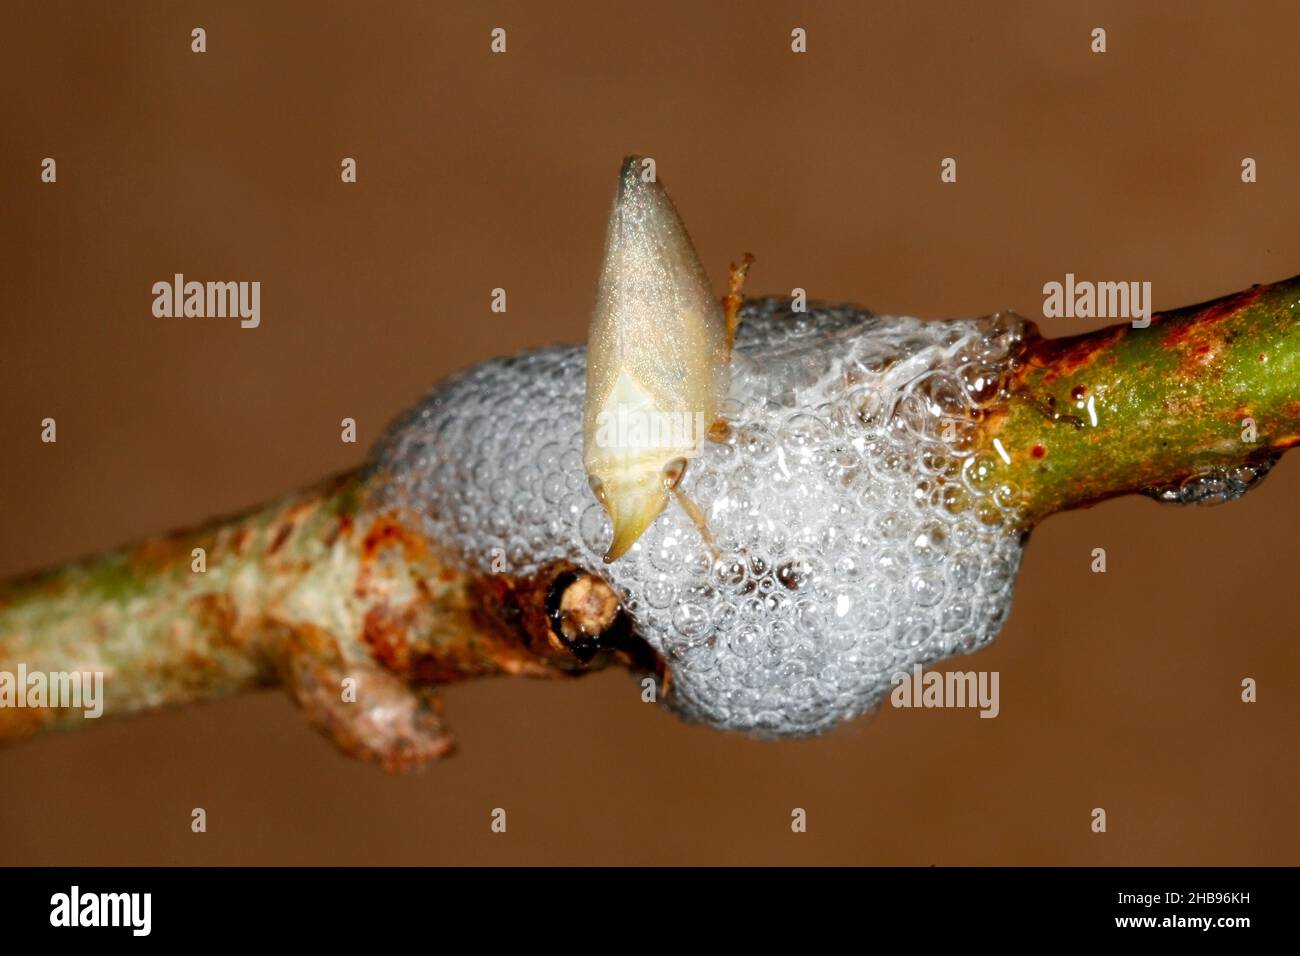 Instar des Spittlebug, Philagra parva. Nymphen produzieren „Spittle“, die an Stängeln von Sträuchern oder kleinen Bäumen haften. Weitere Informationen finden Sie unten. Stockfoto